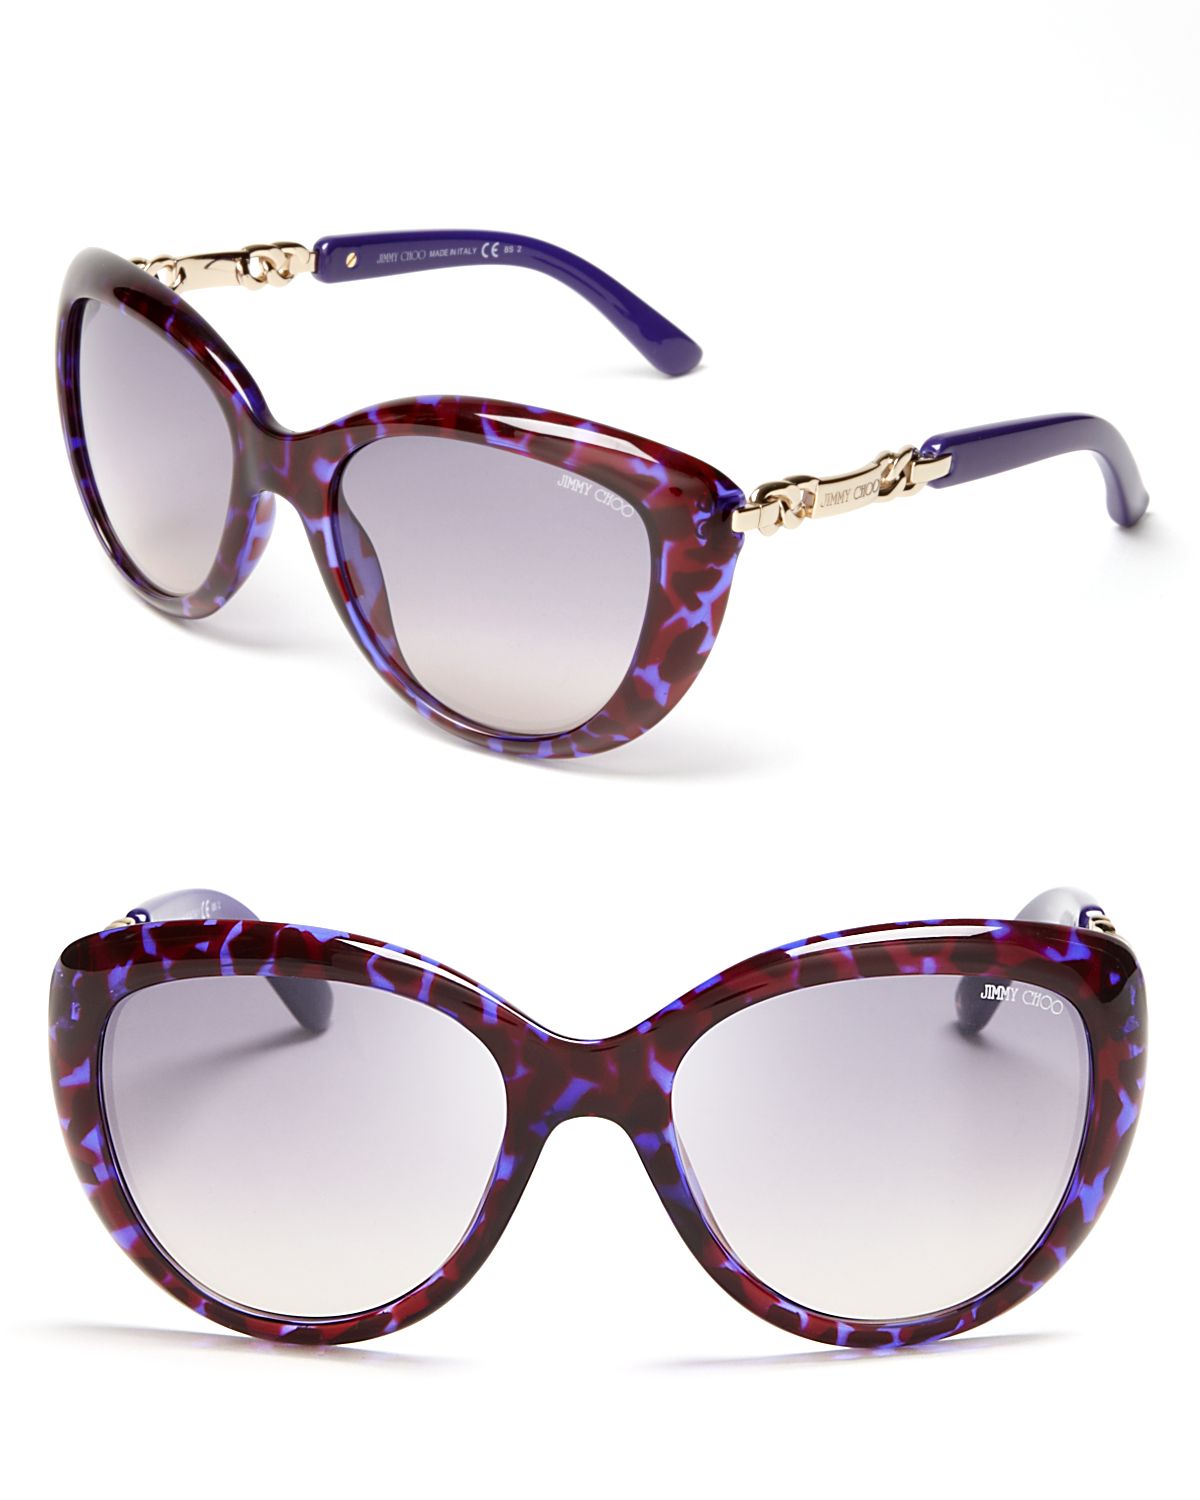 Lyst - Jimmy Choo Link Temple Cateye Sunglasses in Purple